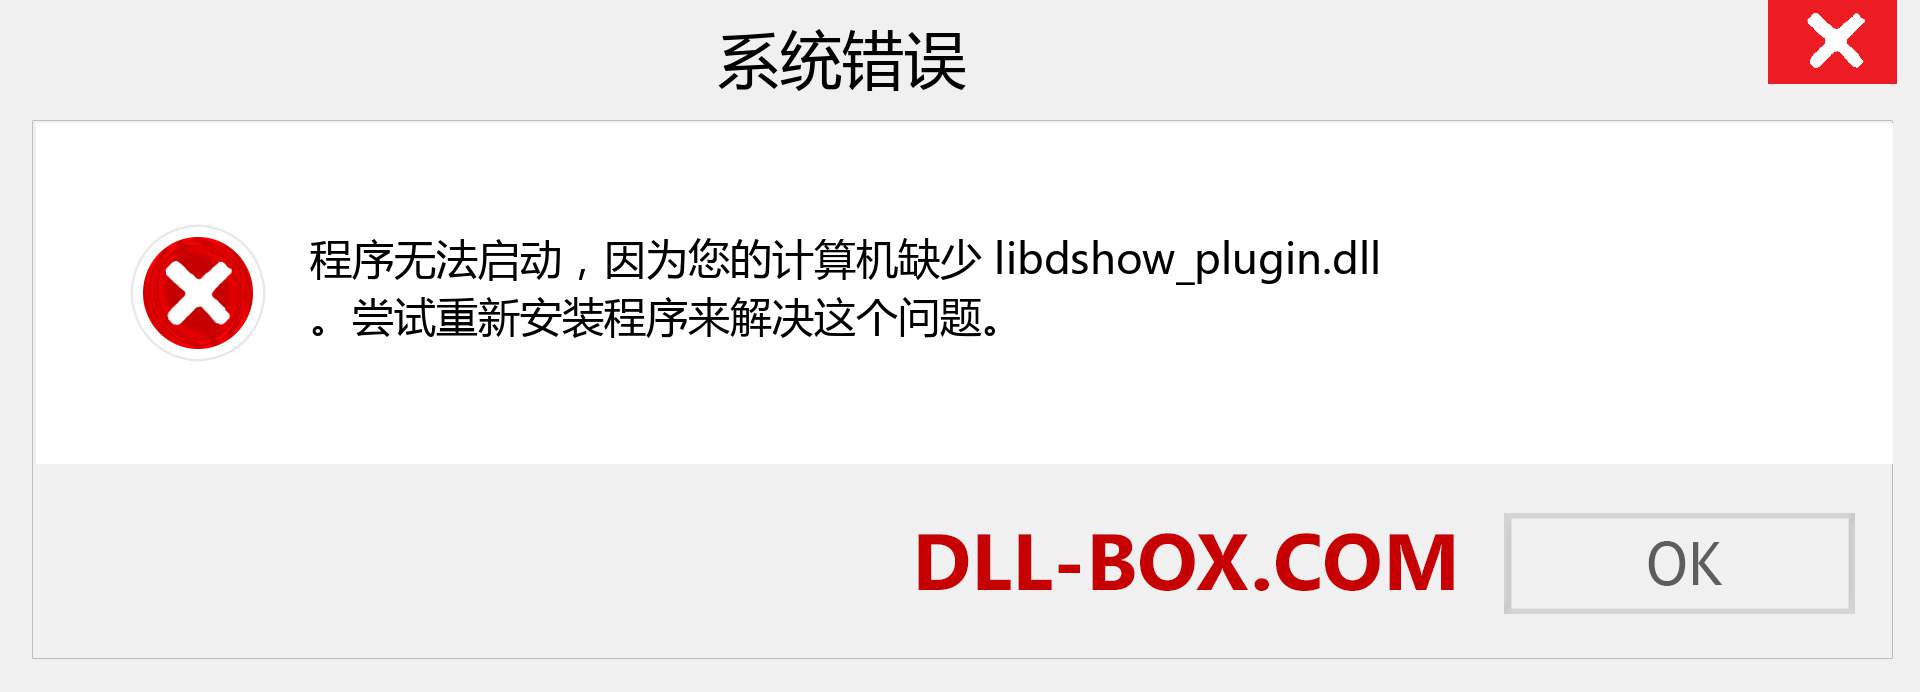 libdshow_plugin.dll 文件丢失？。 适用于 Windows 7、8、10 的下载 - 修复 Windows、照片、图像上的 libdshow_plugin dll 丢失错误